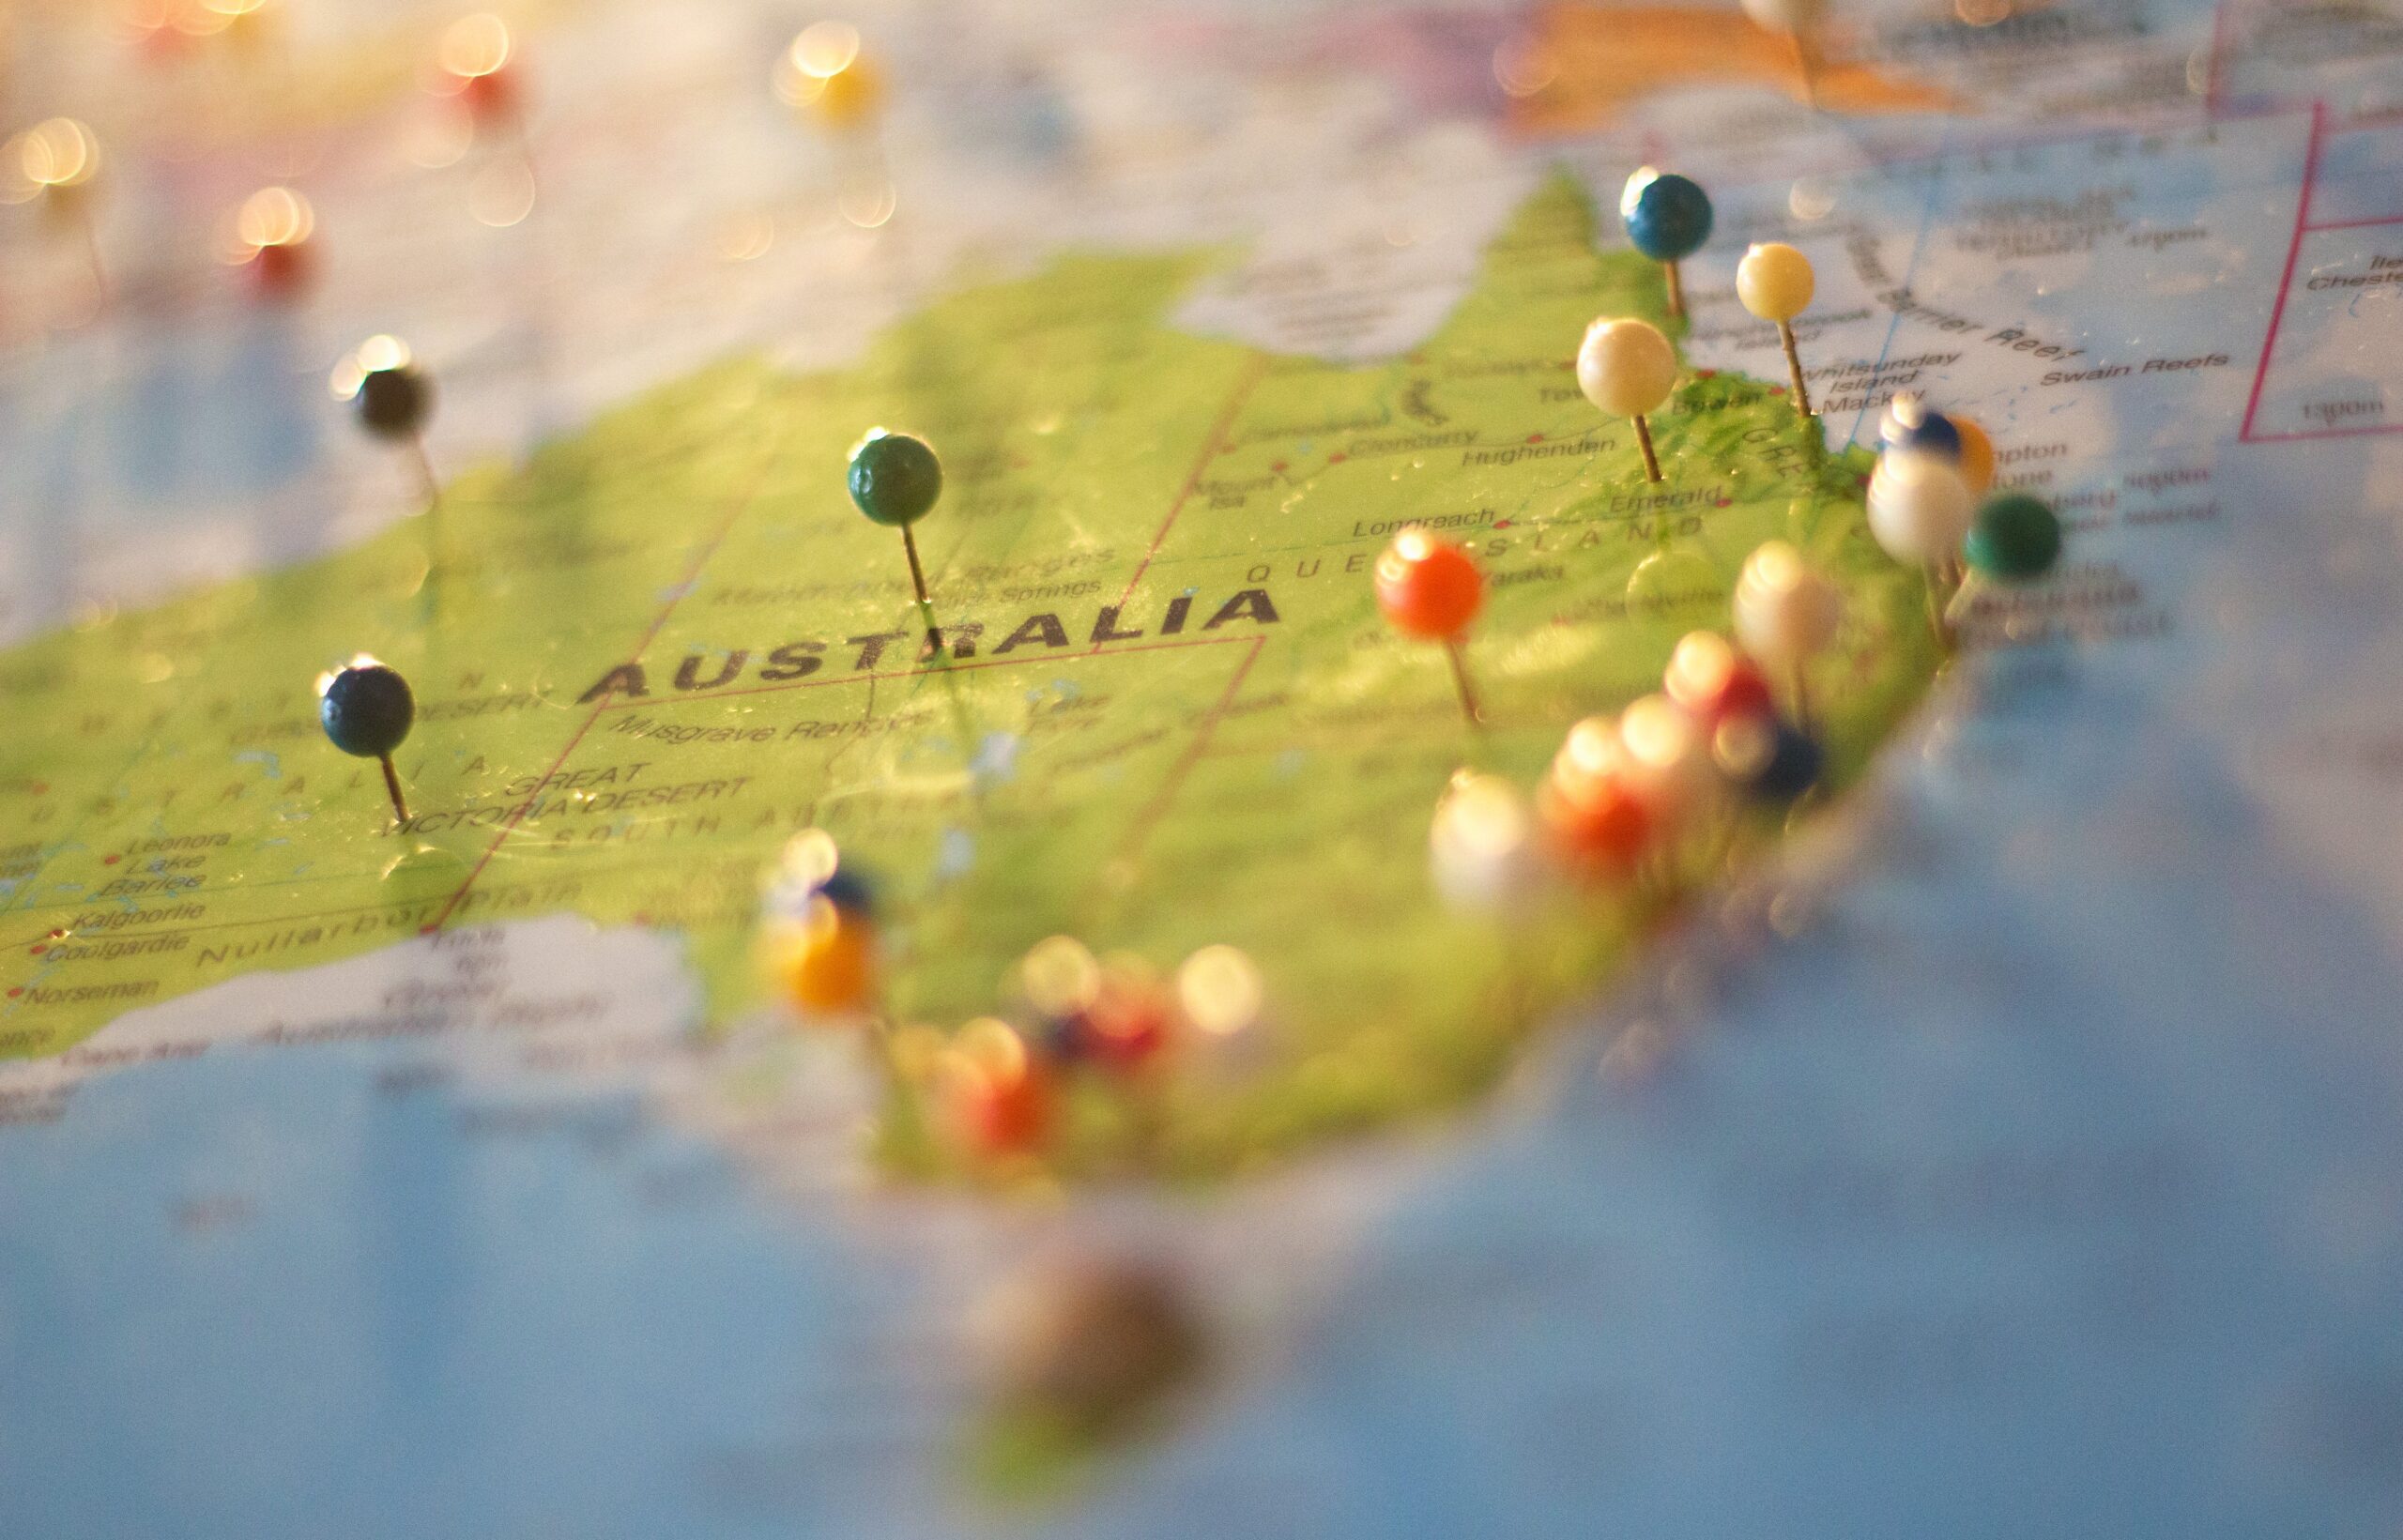 At arbejde i Australien: En danskers perspektiv